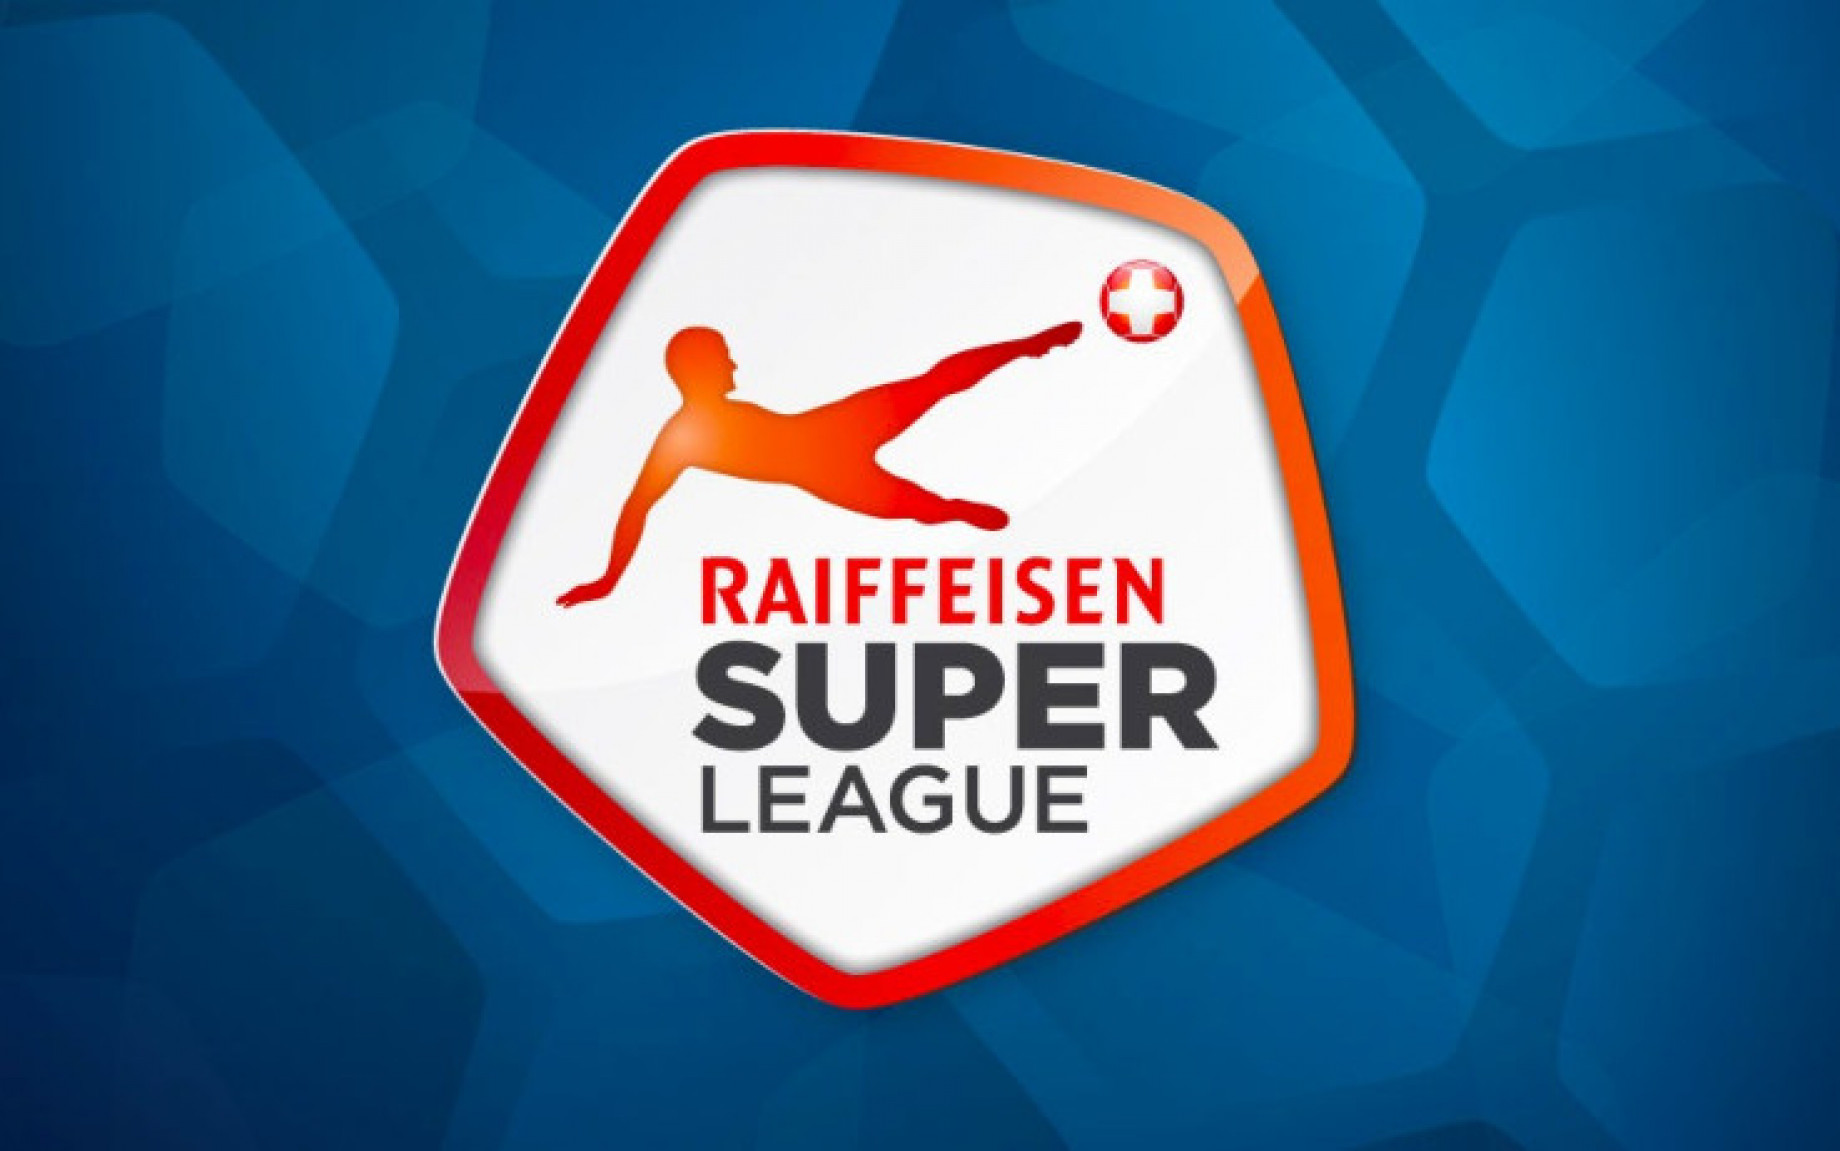 Svizzera_campionato_Raiffeisen_Super_League_logo.jpg